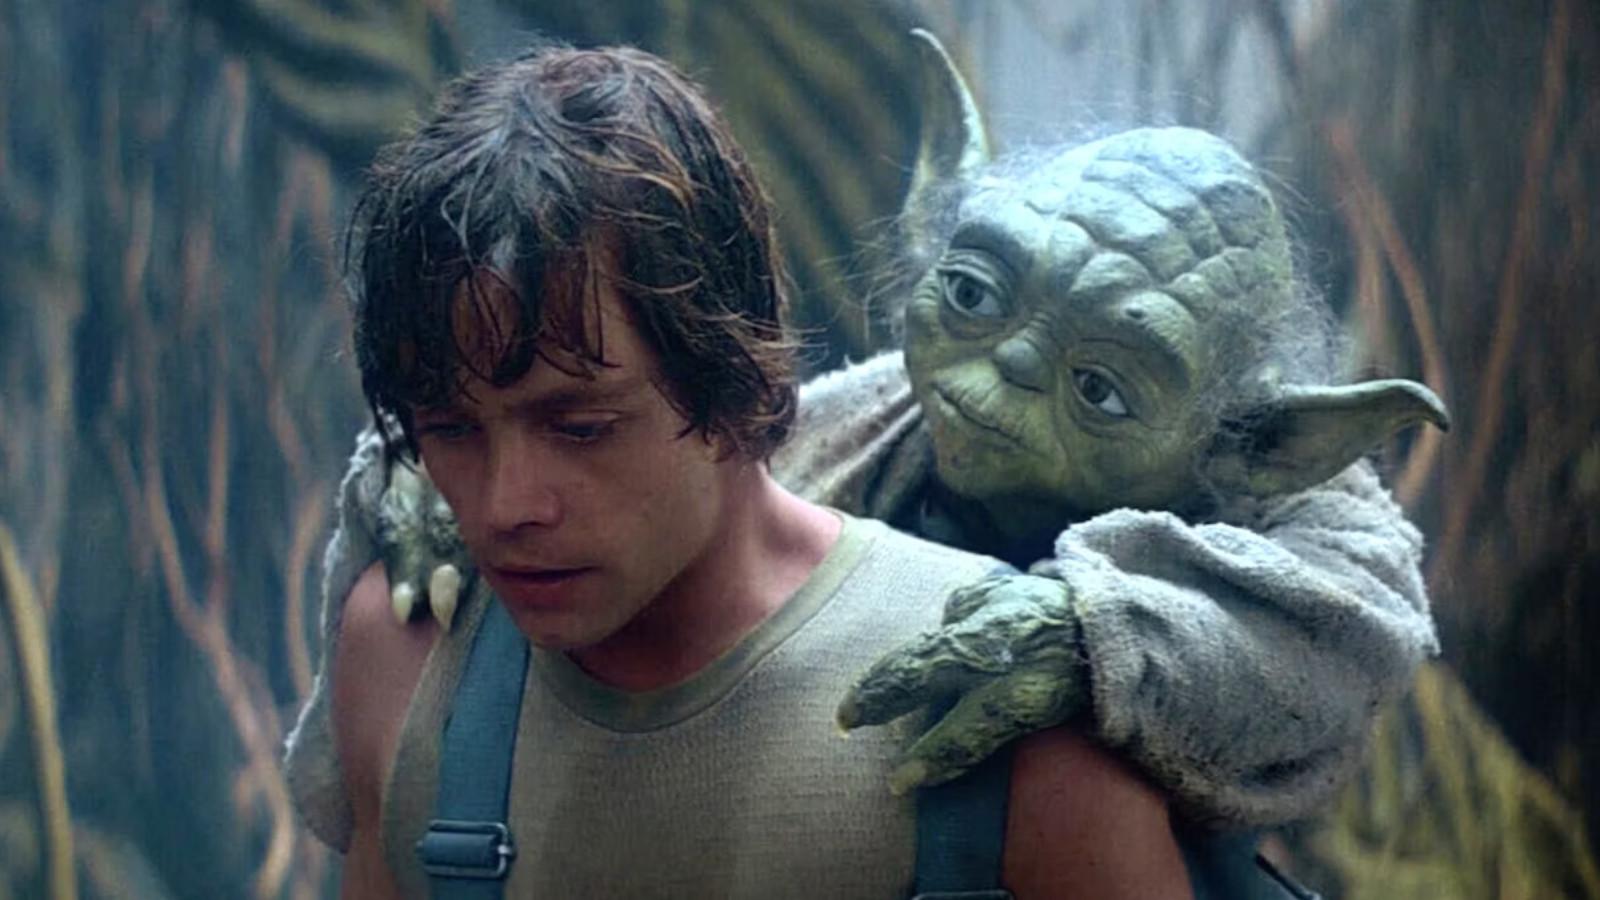 Luke Skywalker and Yoda in The Empire Strikes Back